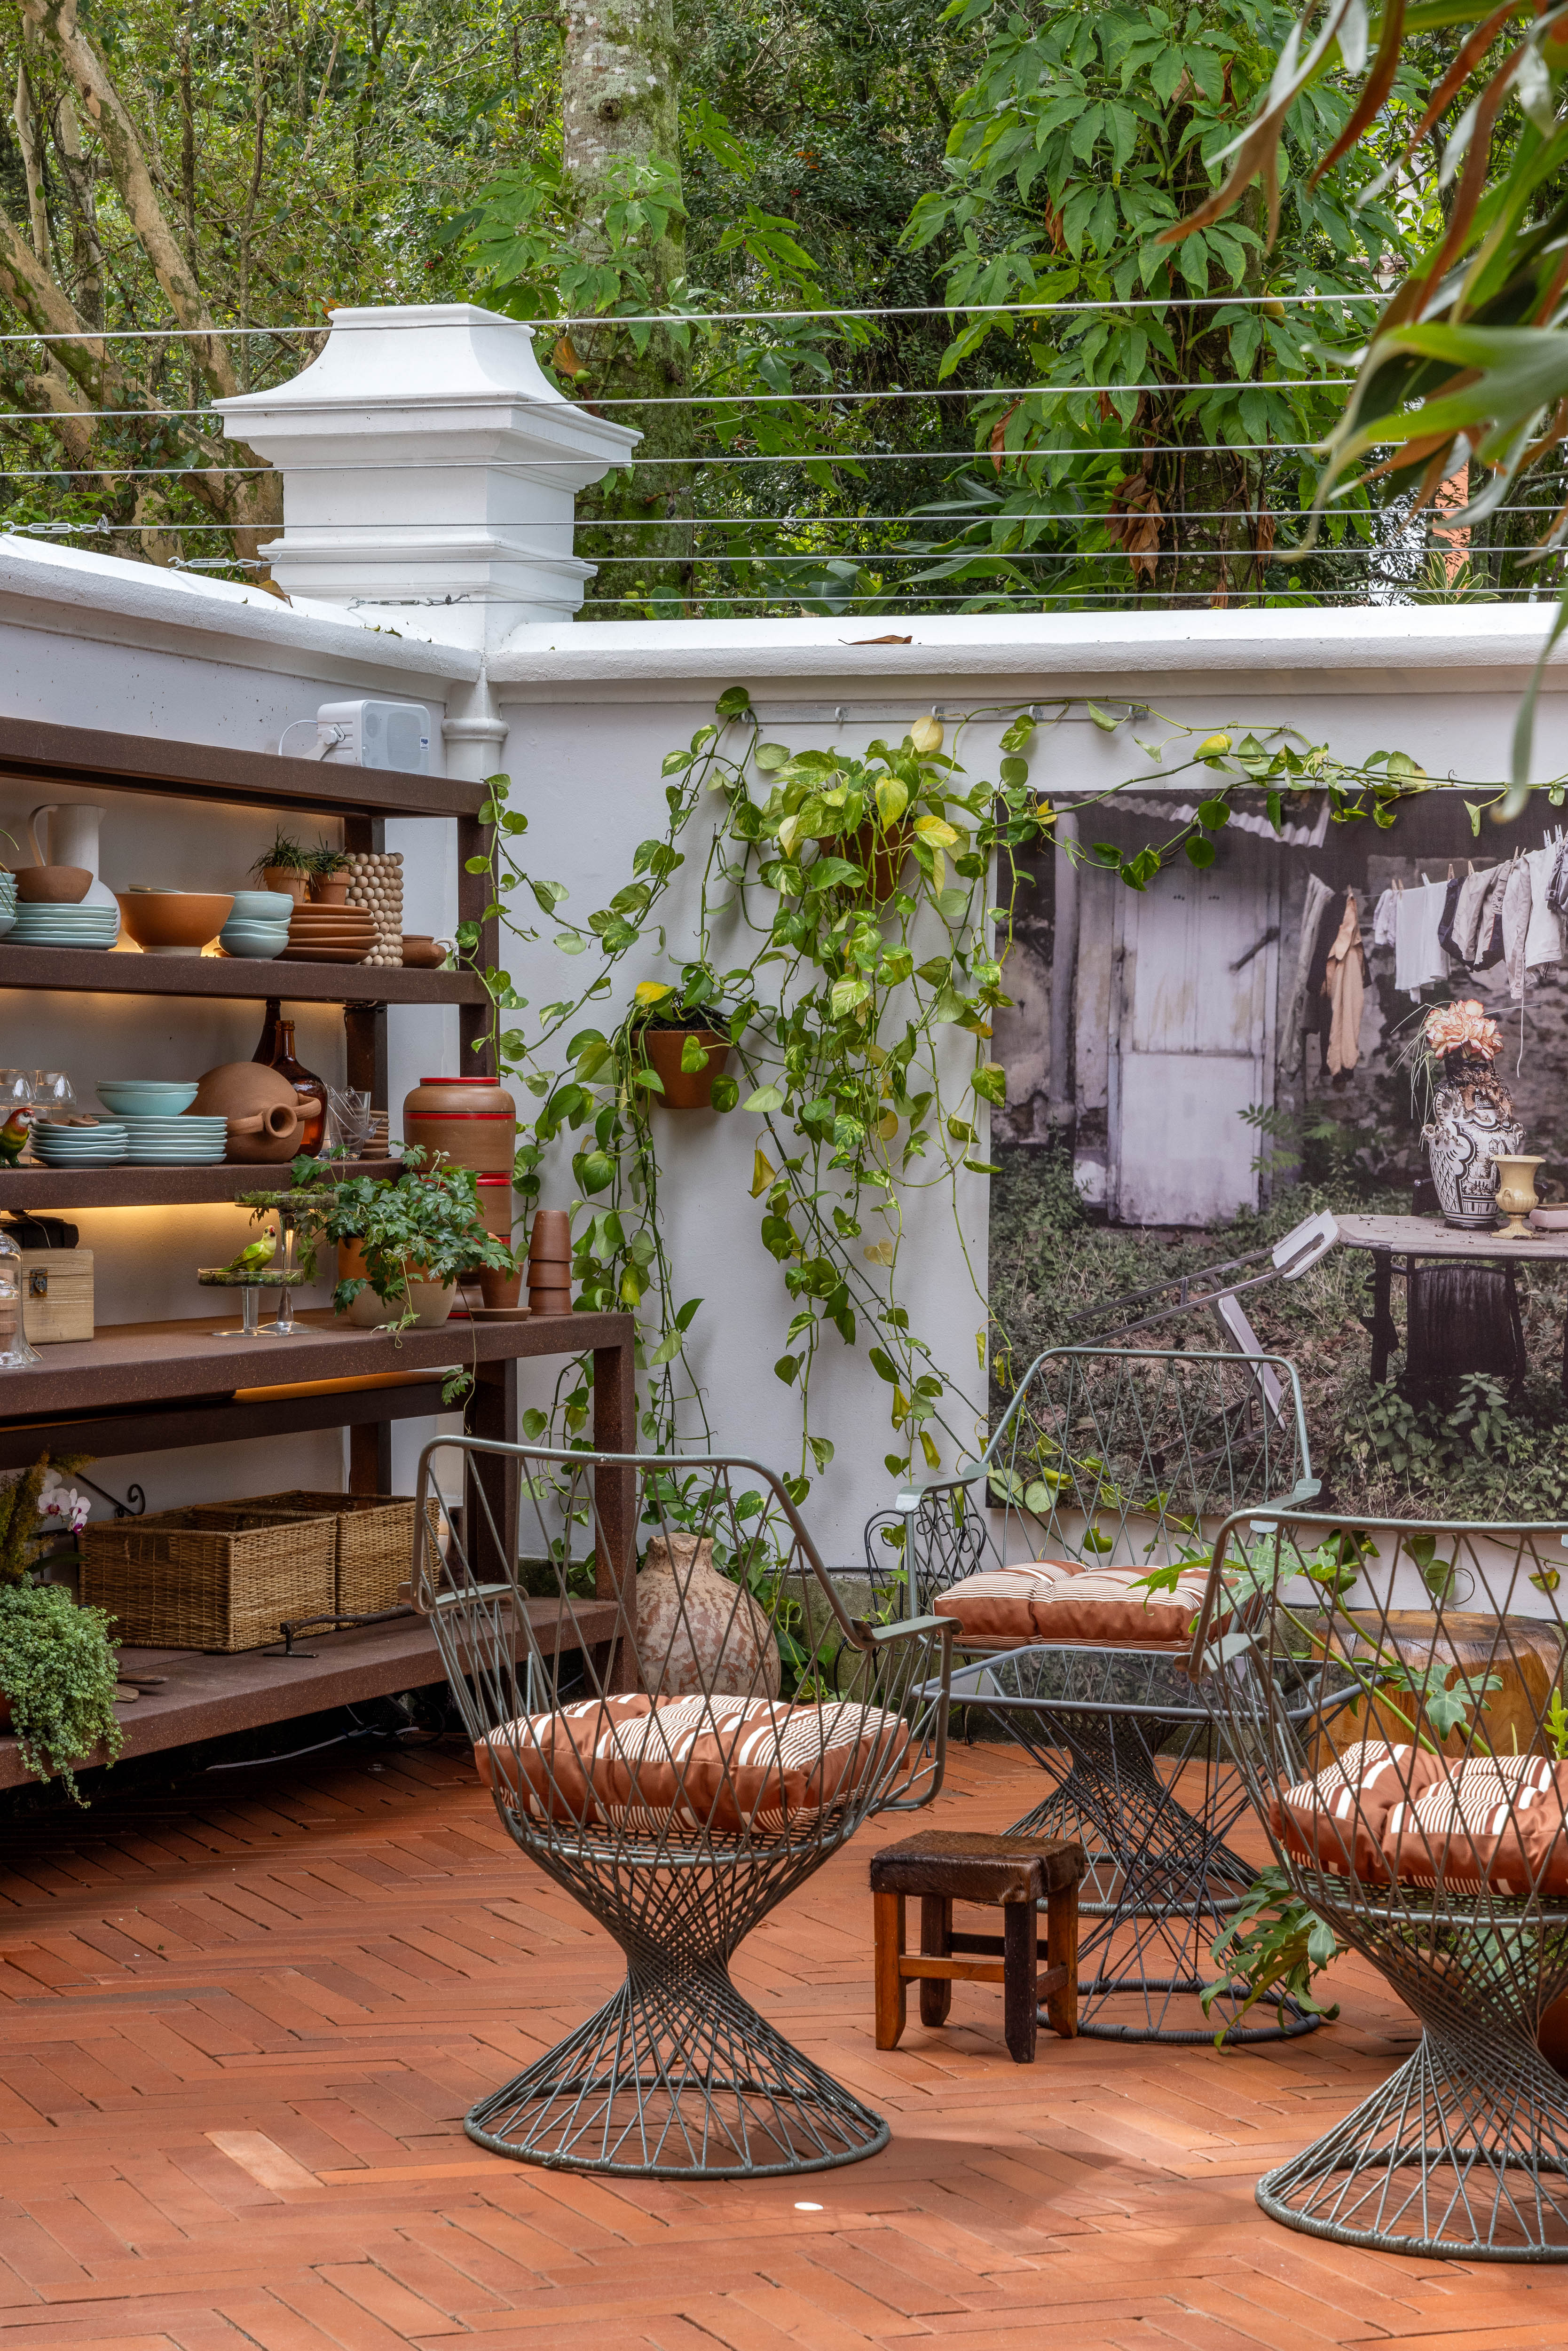 Terraza e loja Cooking To Go - ambiente de Marcela Martins para a CASACOR Rio 2023. Na foto, pátio com plantas, mesas e cadeiras.